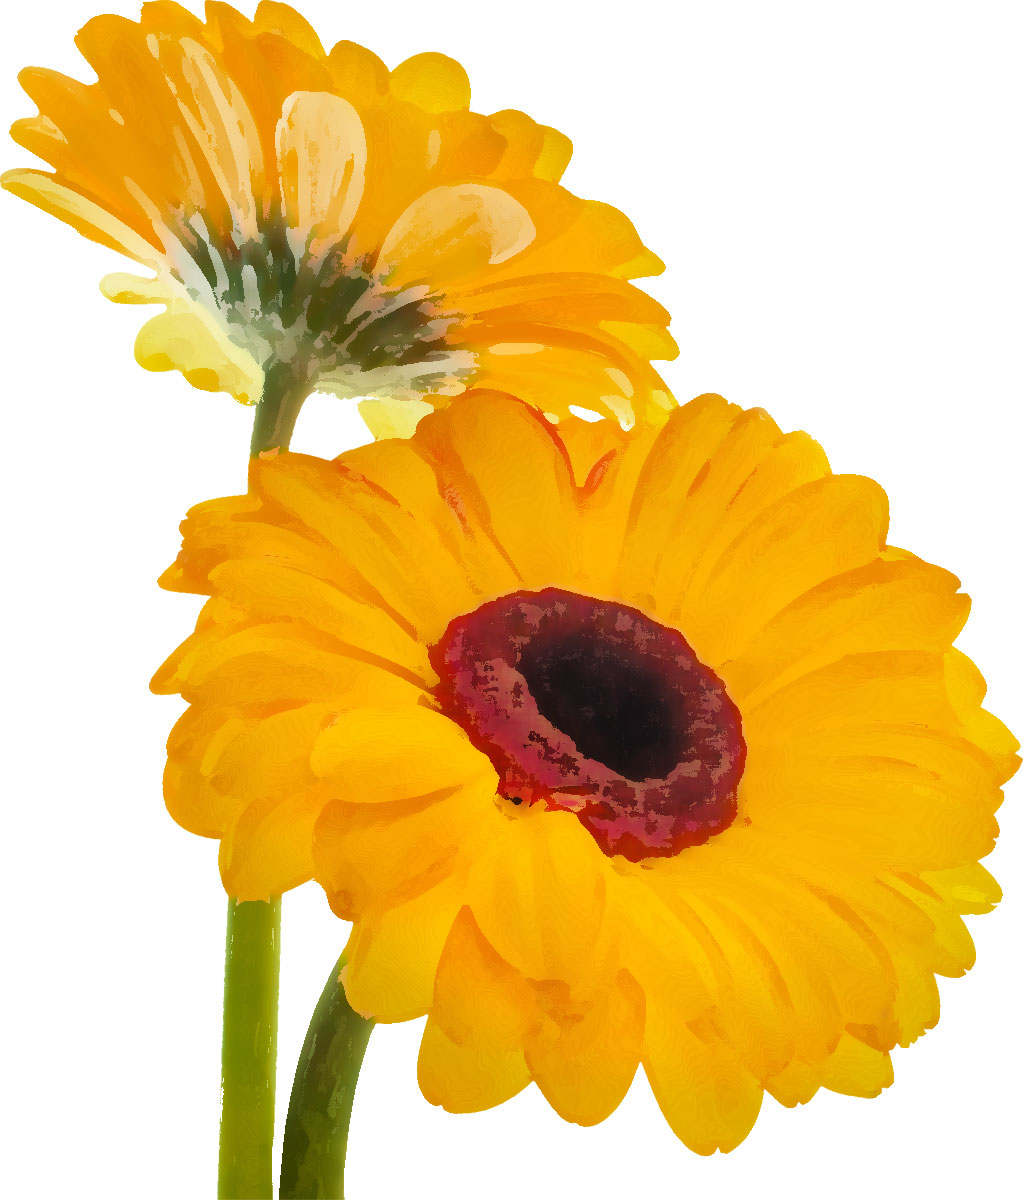 黄色い花のイラスト フリー素材 No 151 黄色 ガーベラ 二輪